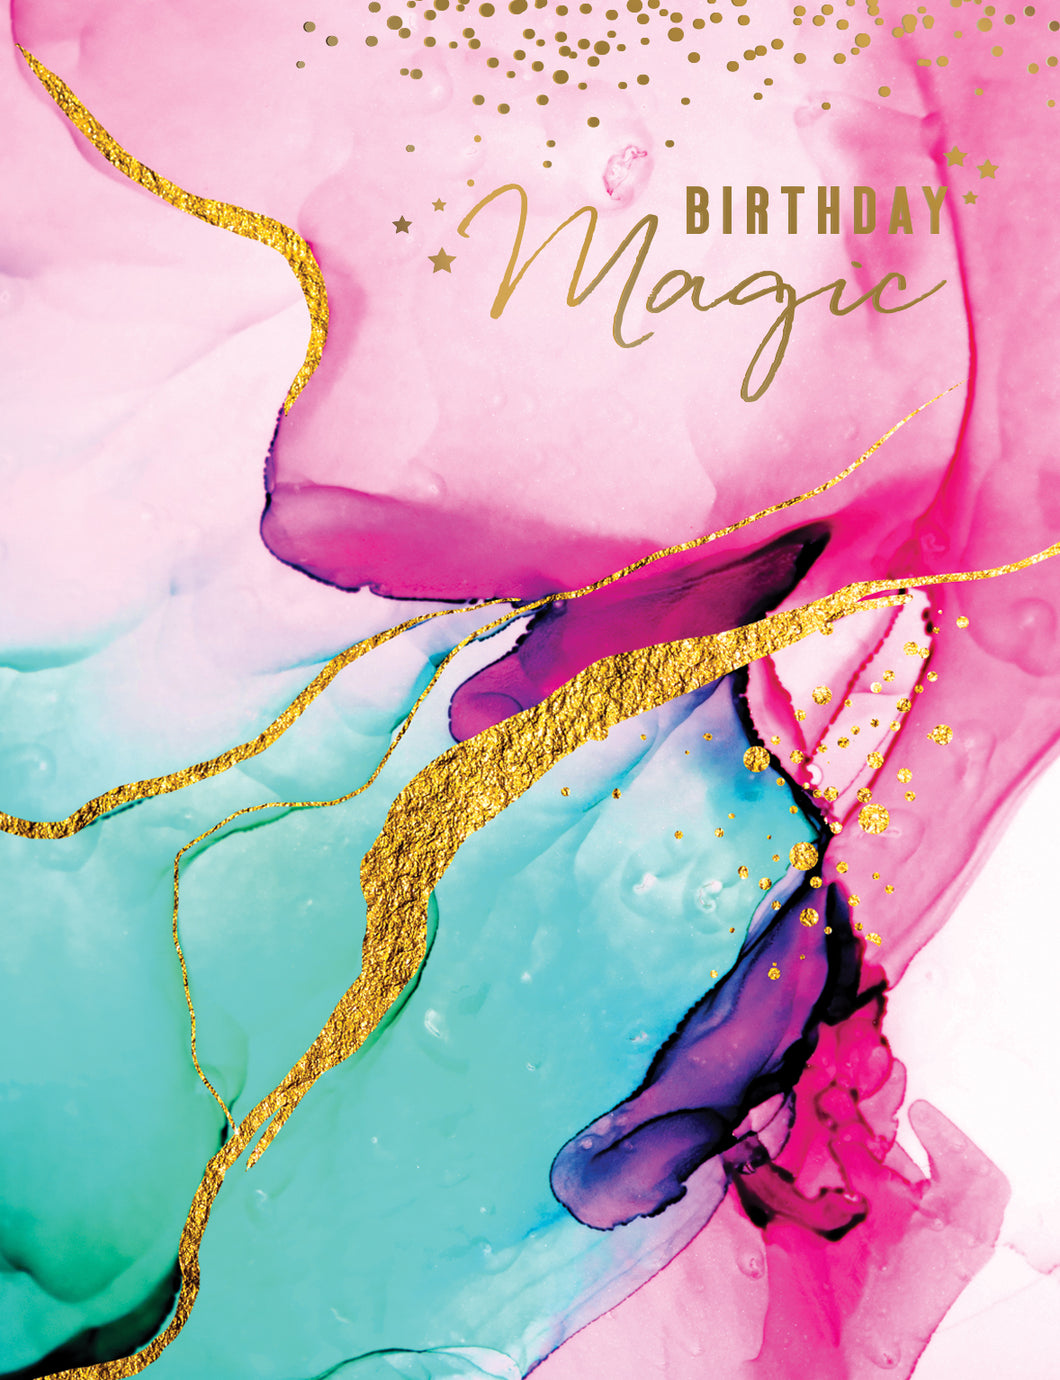 Birthday Magic Birthday Card 05085